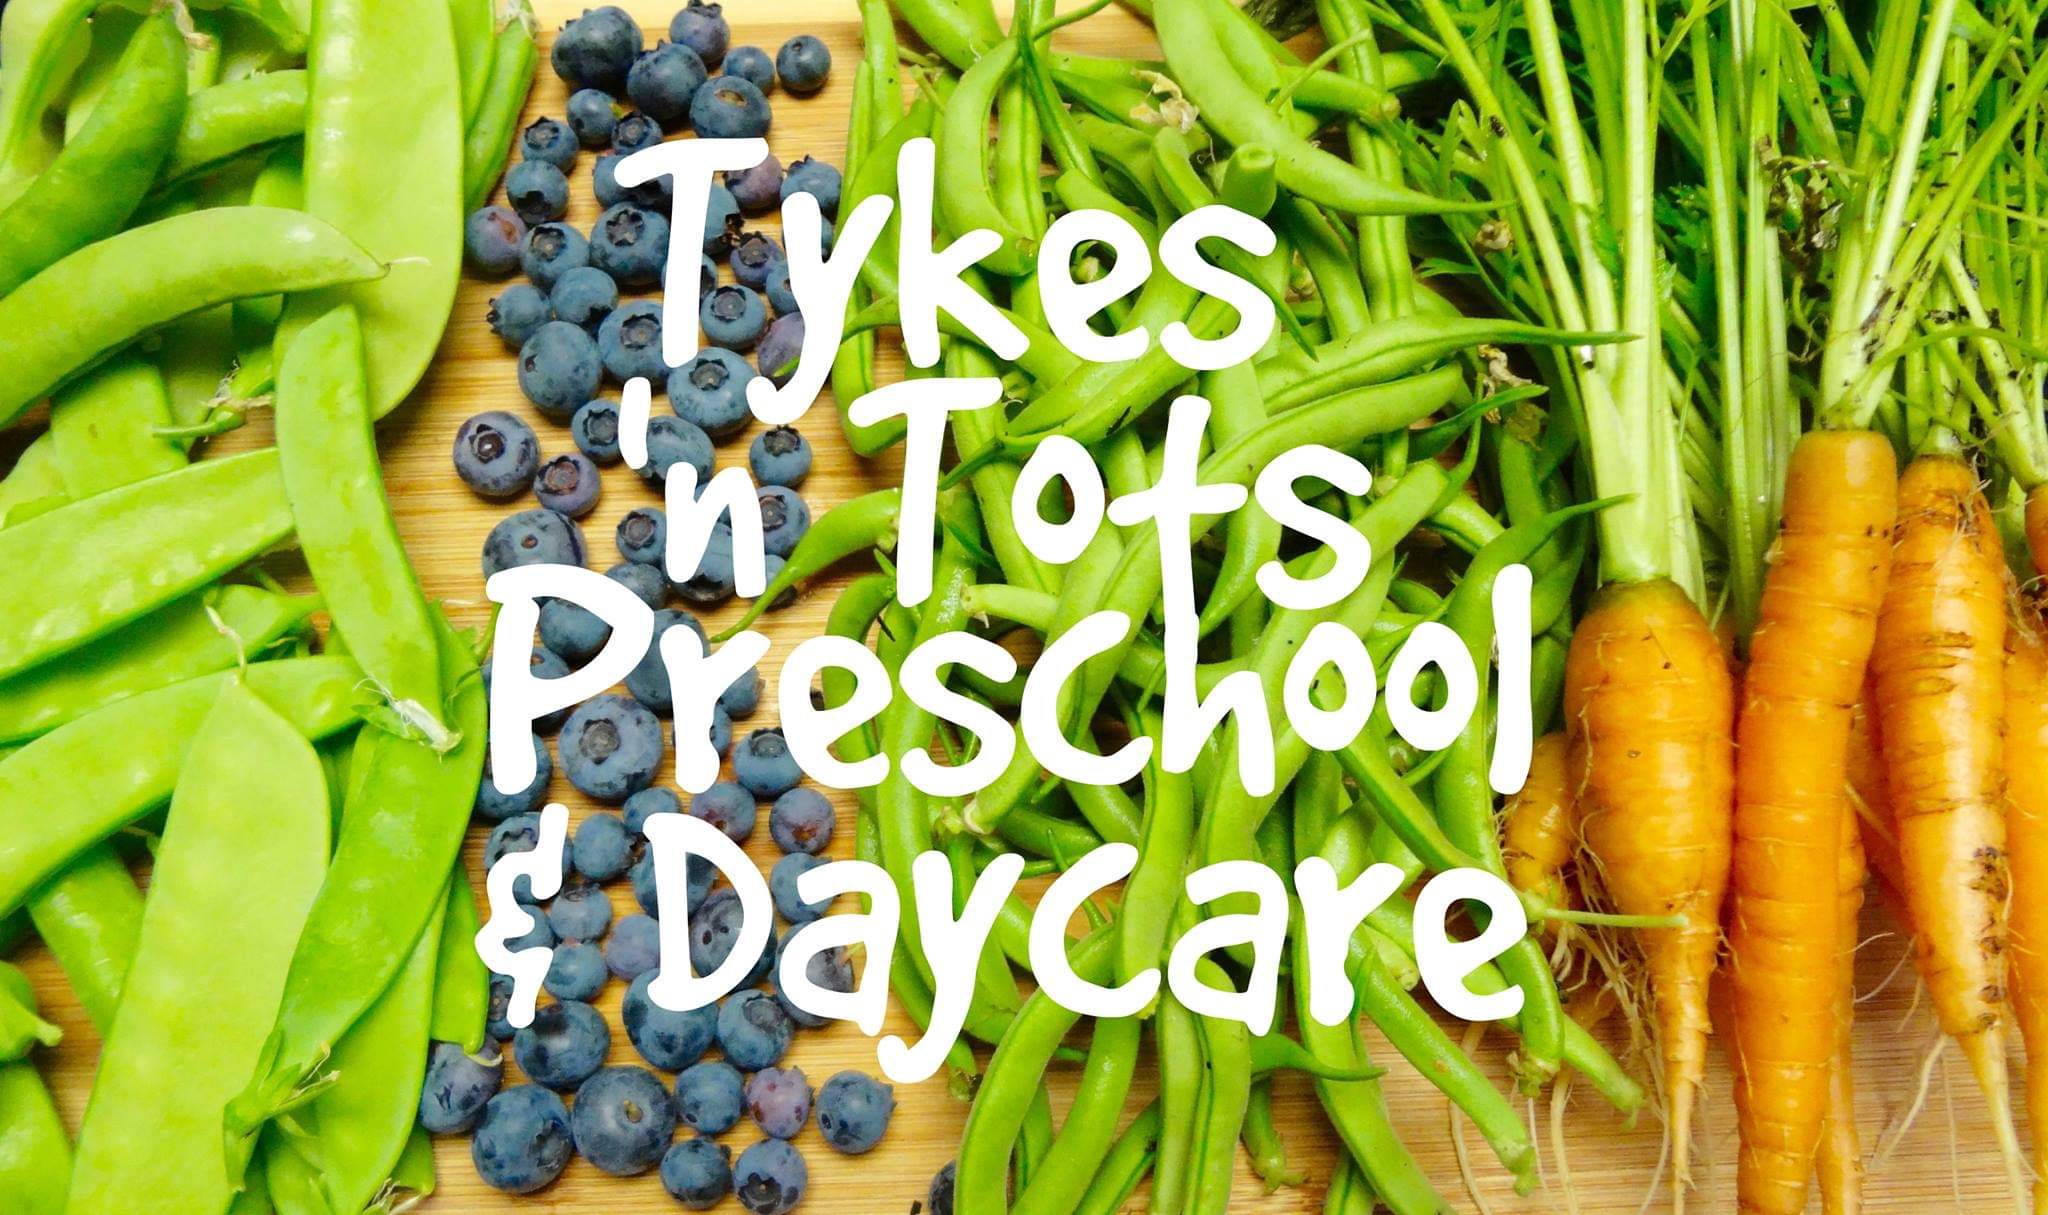 Tykes ‘n Tots Preschool & Daycare